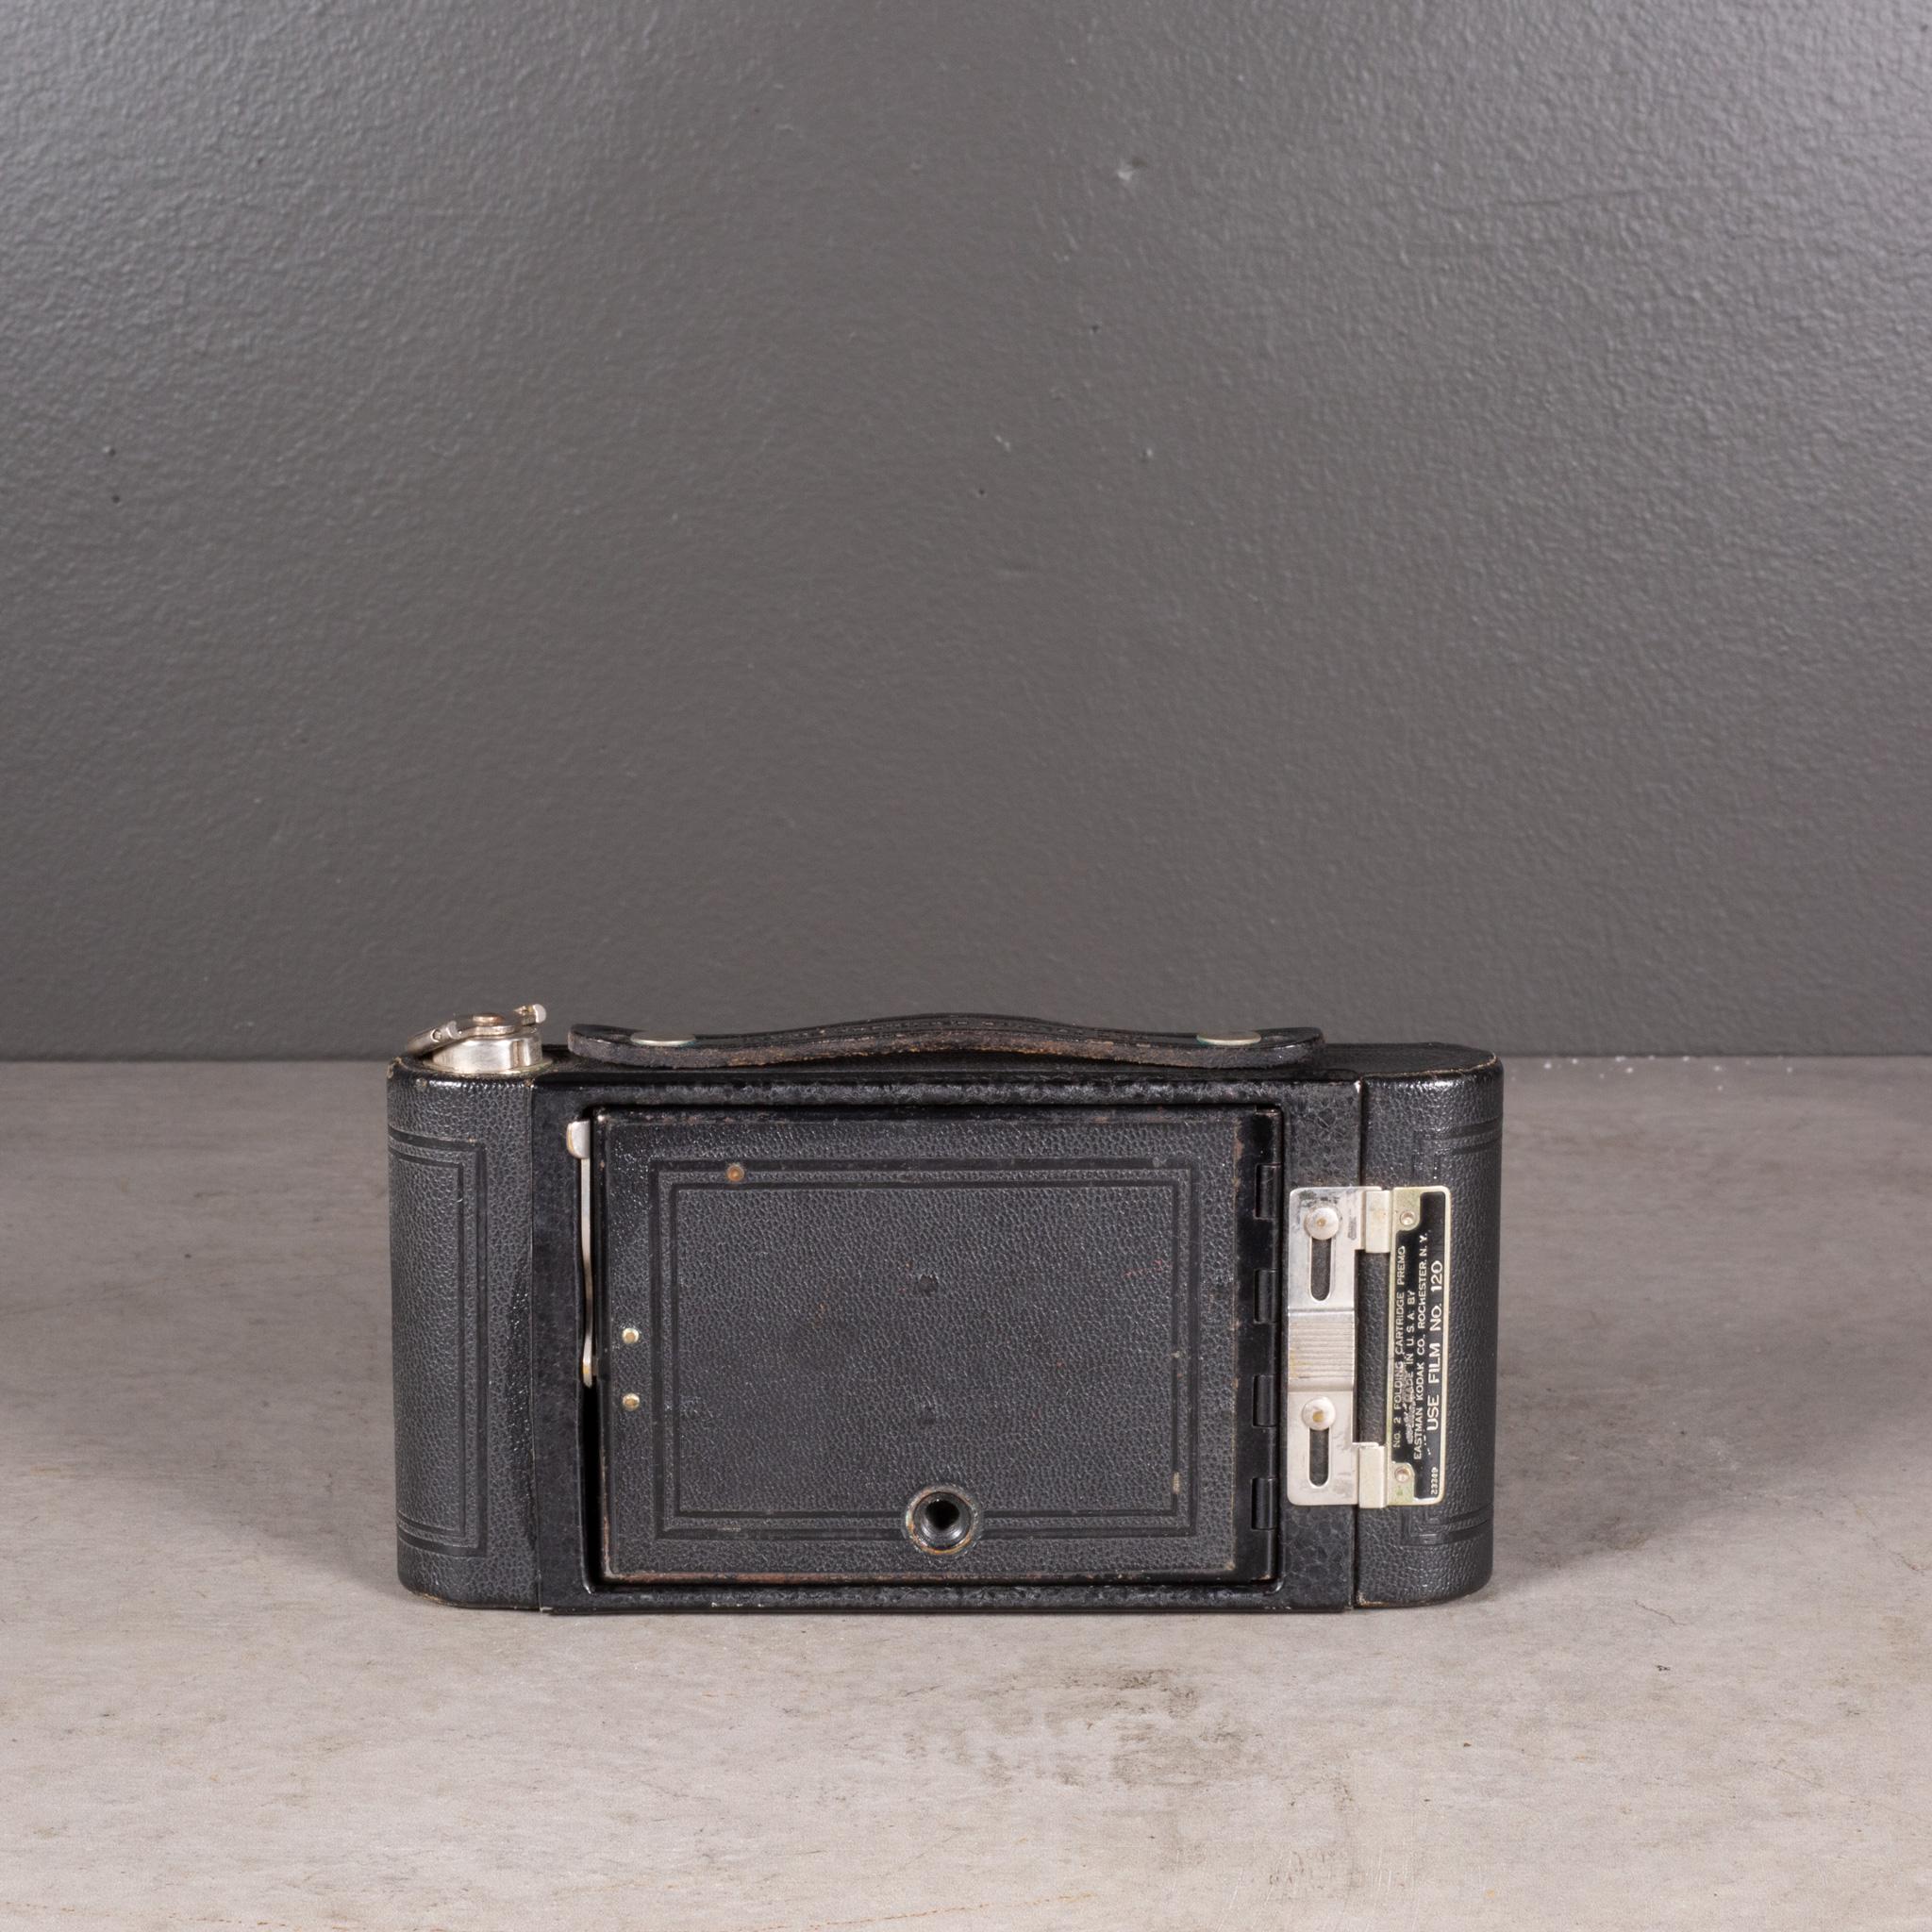 Antique Kodak No. 2 Premo Folding Camera c.1916 (FREE SHIPPING) In Good Condition For Sale In San Francisco, CA